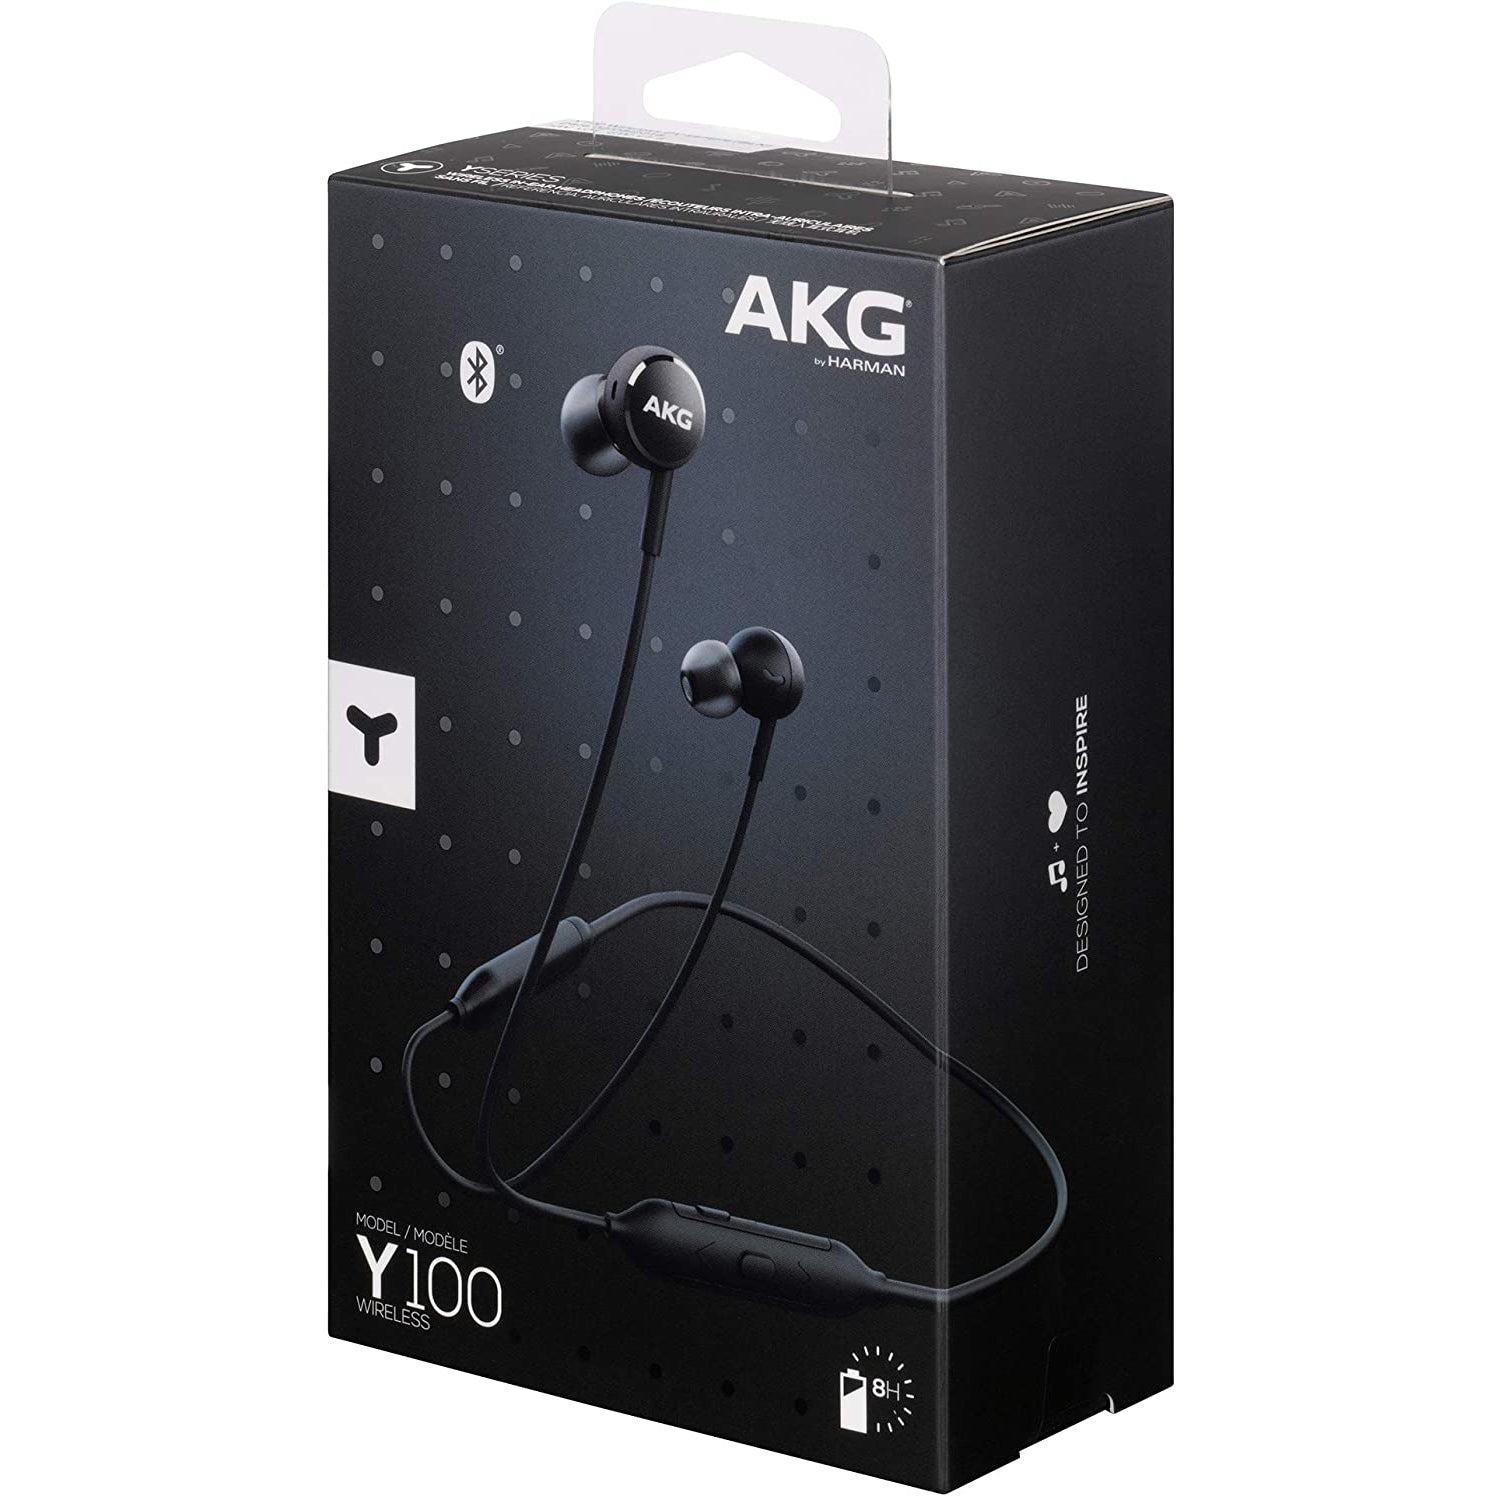 AKG Y100 Wireless In-Ear Headphones - Black - New